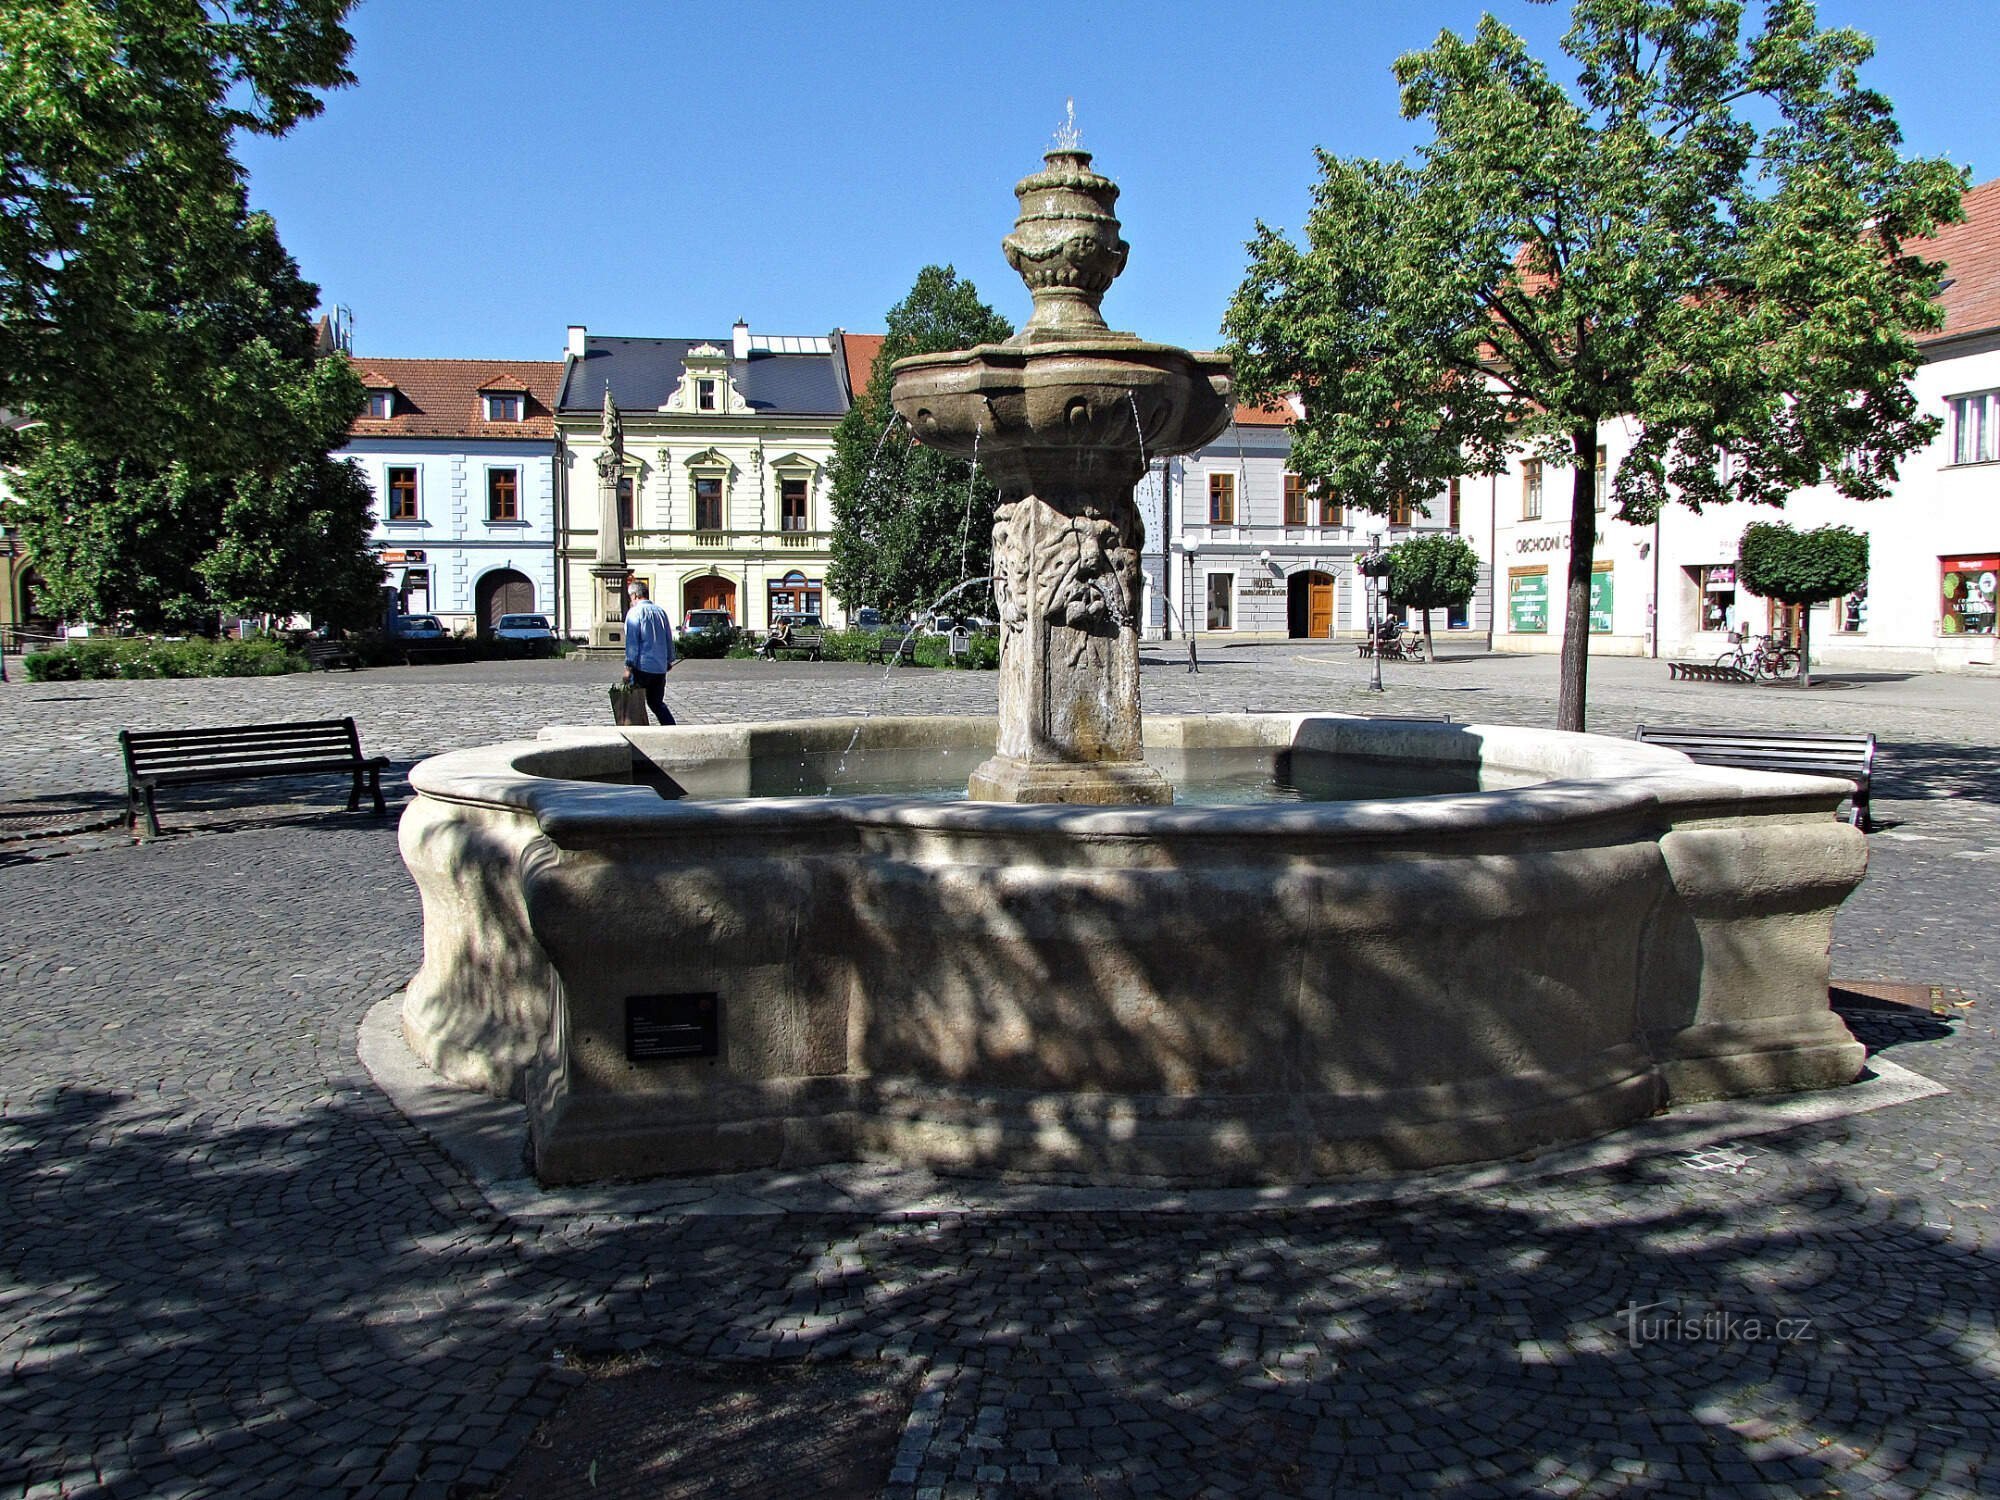 Uherské Hradiště - fontaine sur Mariánské náměstí